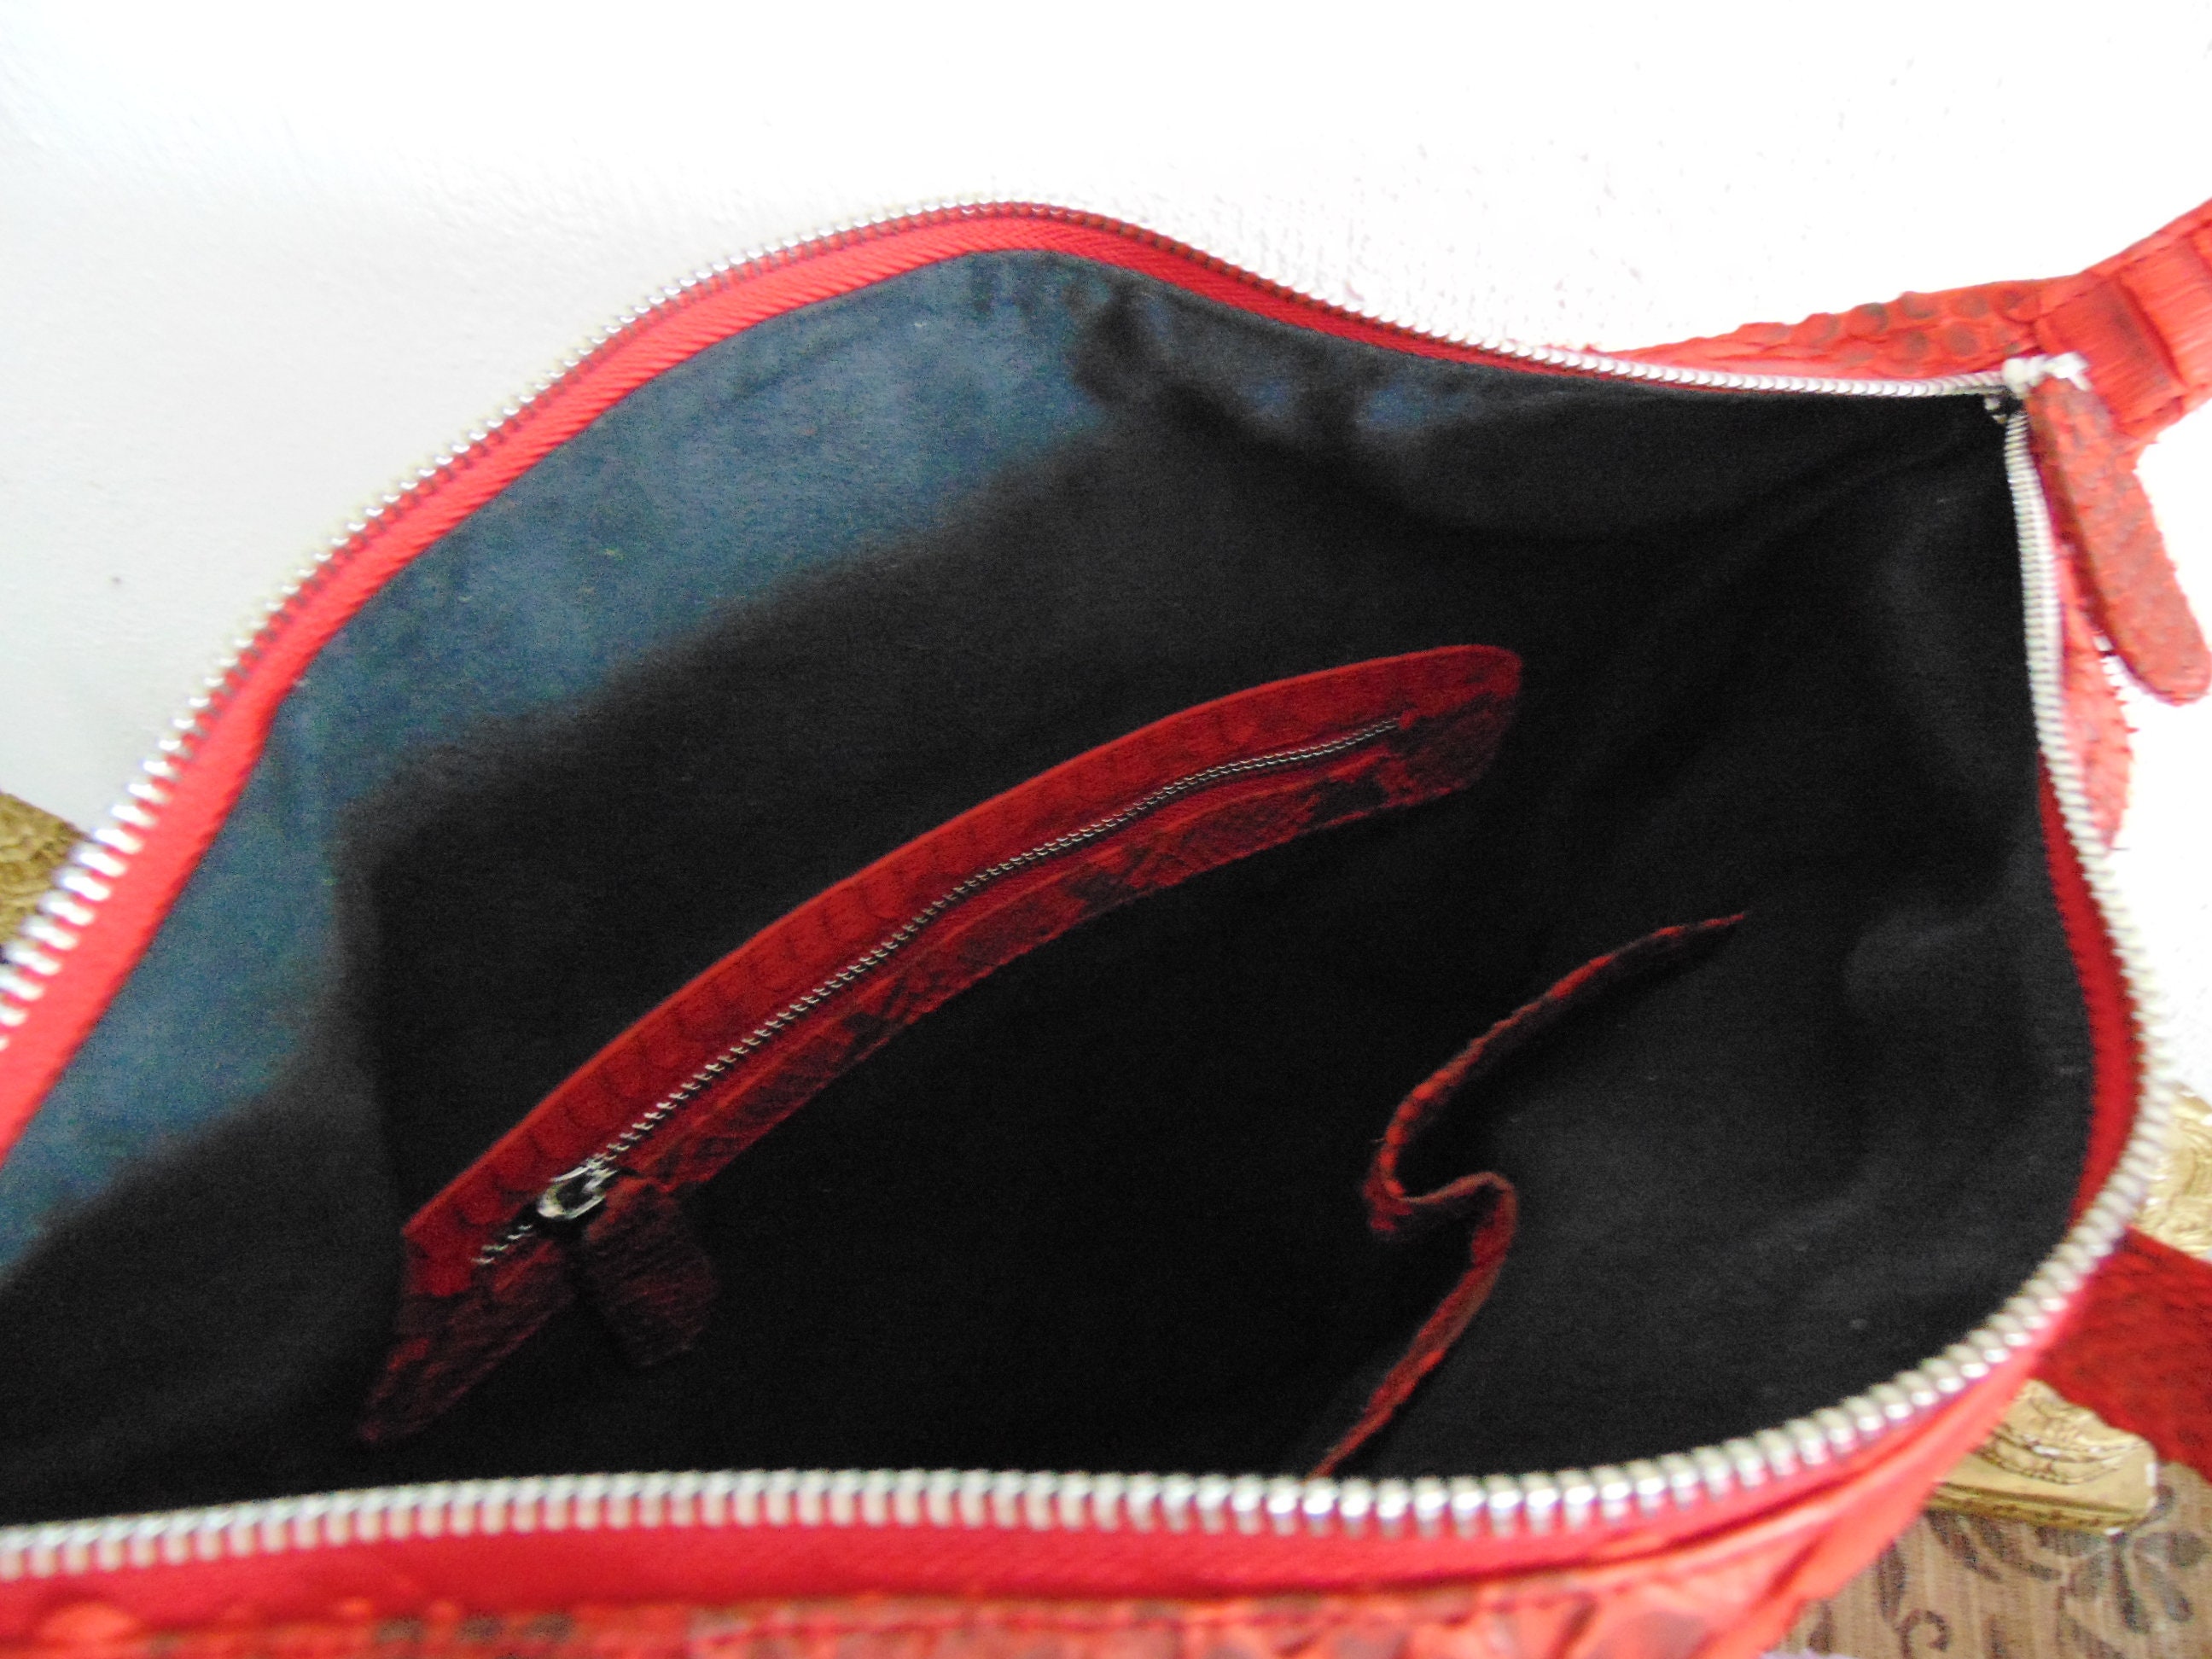 2 in 1 bag and backpack genuine python snakeskin backpack | Etsy